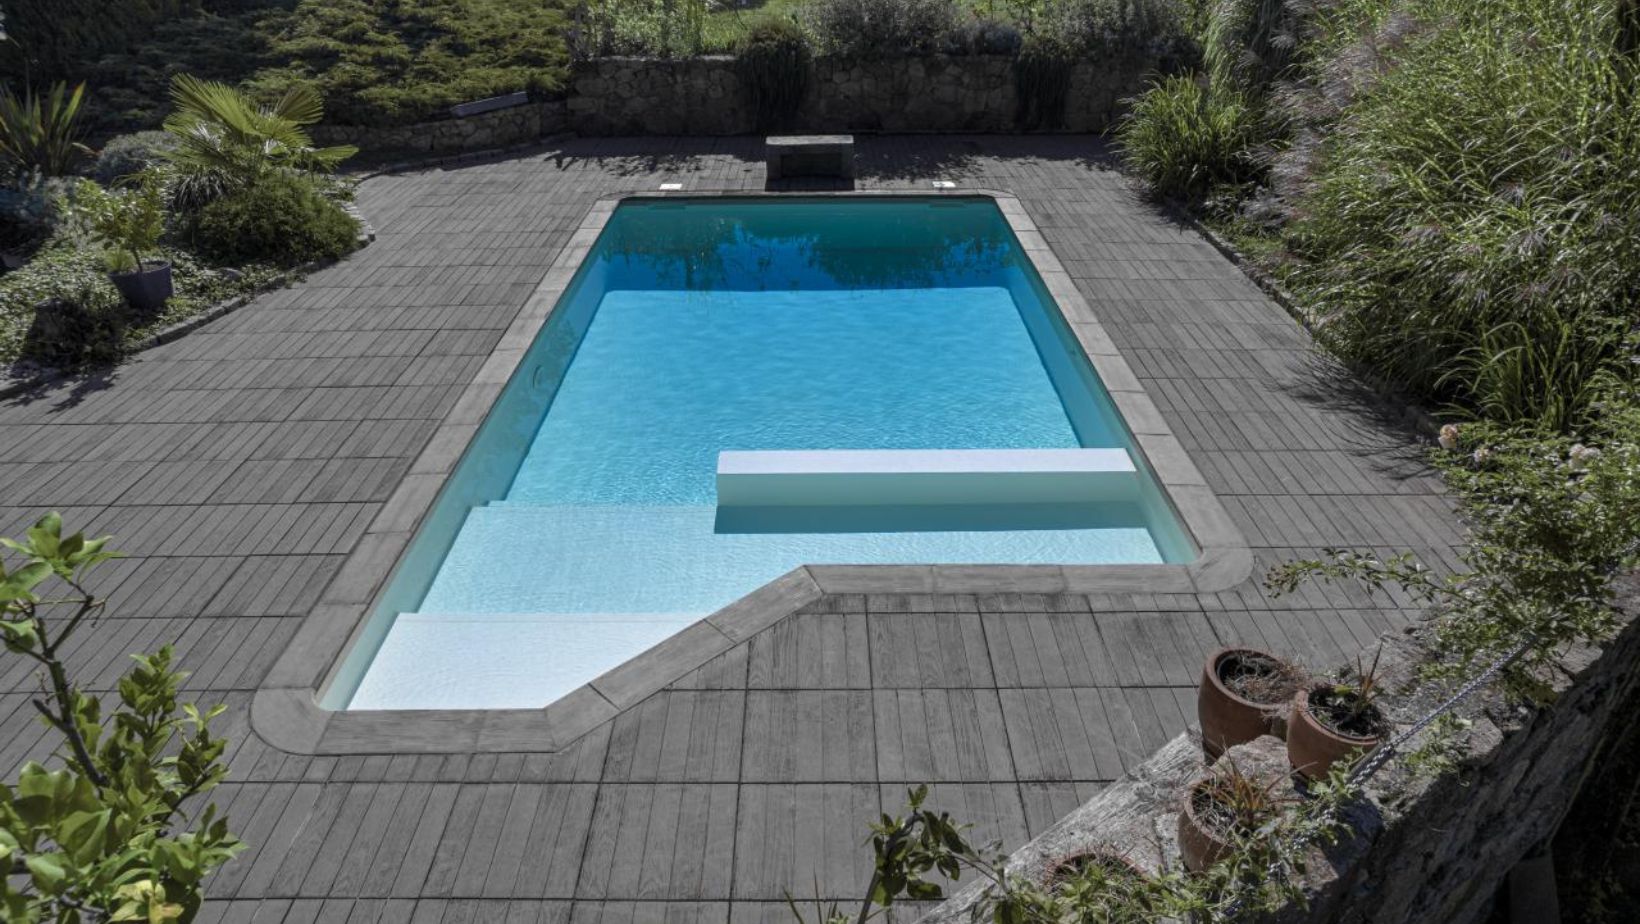 Le cliché illustre une piscine avec un liner blanc, reflet de clarté et de pureté.